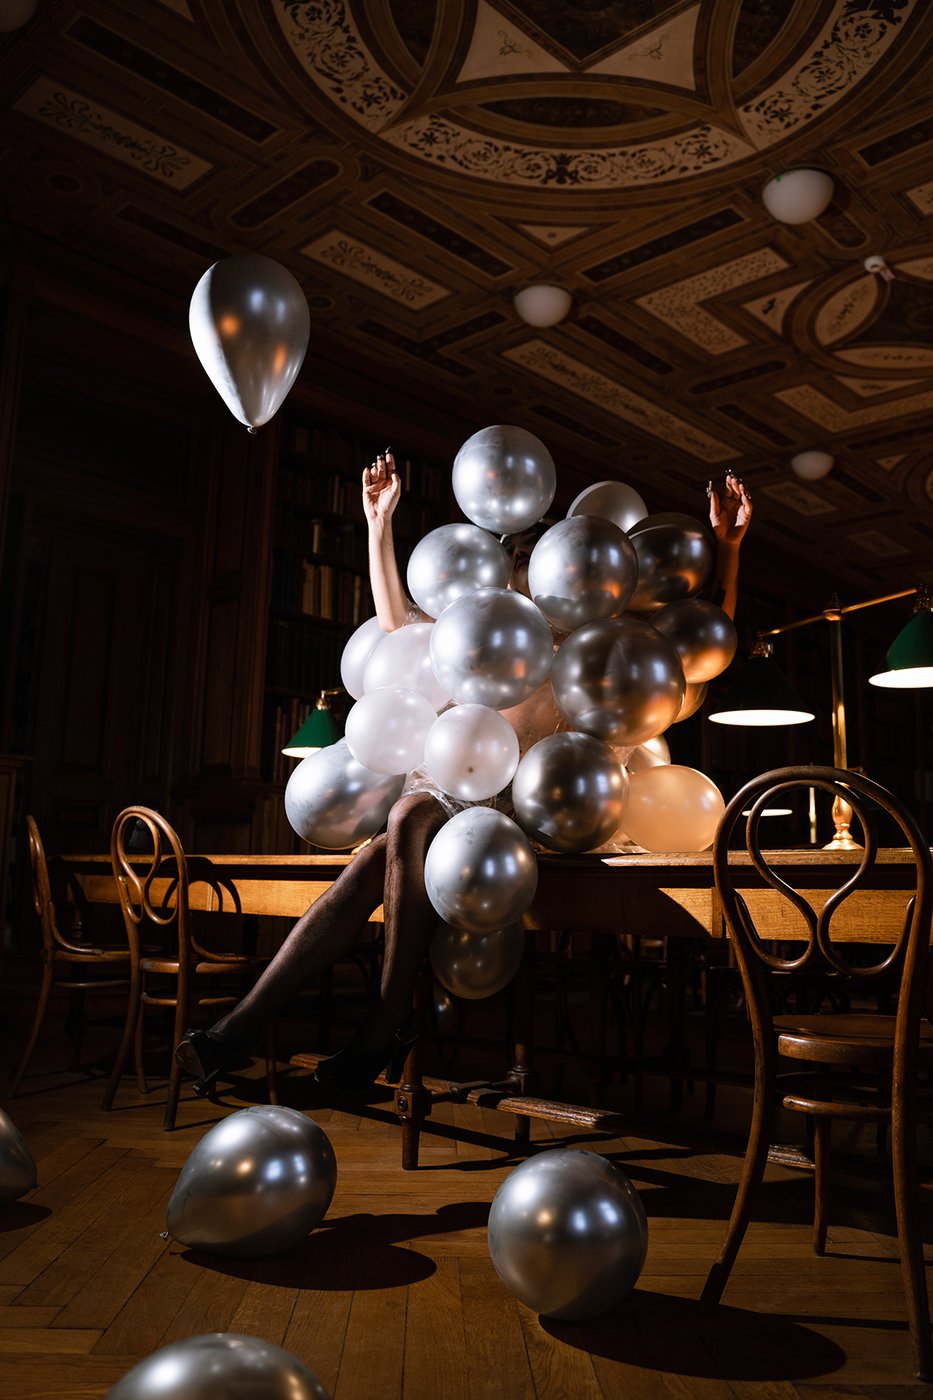 dunkler Raum mit holzverkleidung, auf einem Holztisch sitz eine Person die von silbernen Luftballonen umhüllt ist, diese fliegen auch im Raum herum